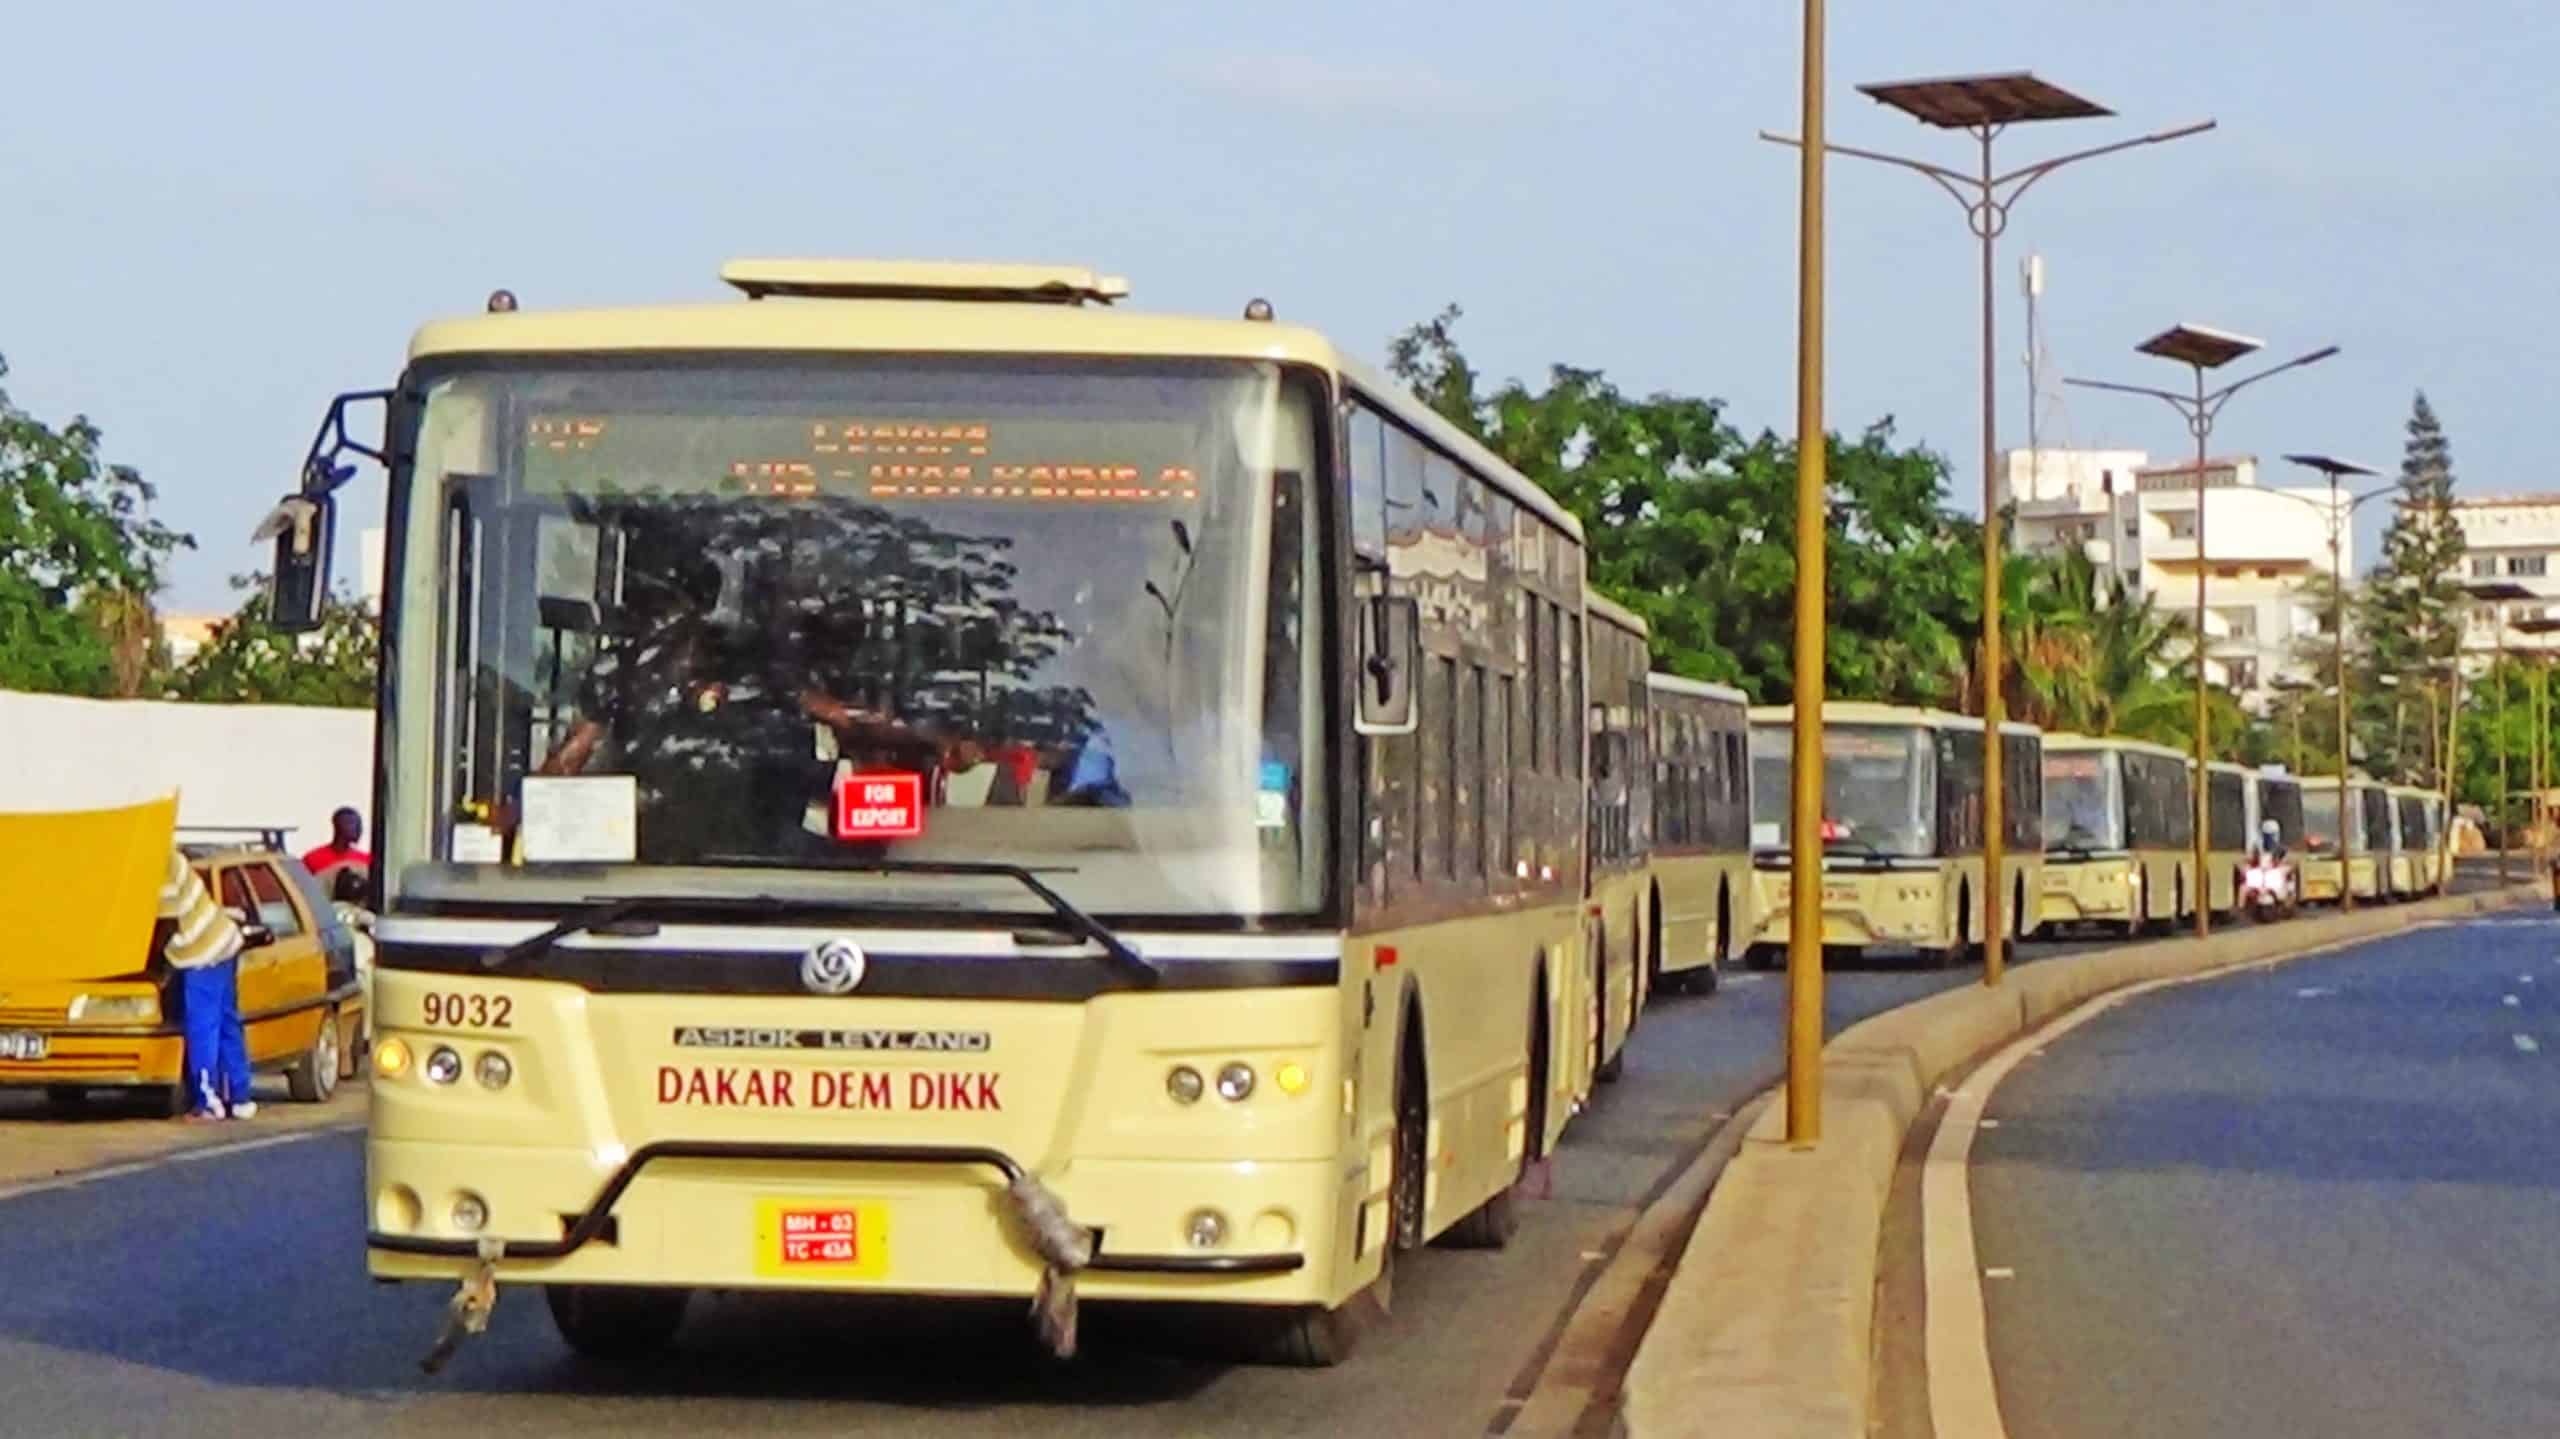 Keur Massar : Dakar Dem Dikk immobilise ses bus pour 48 H, la manif de Yewwi oblige